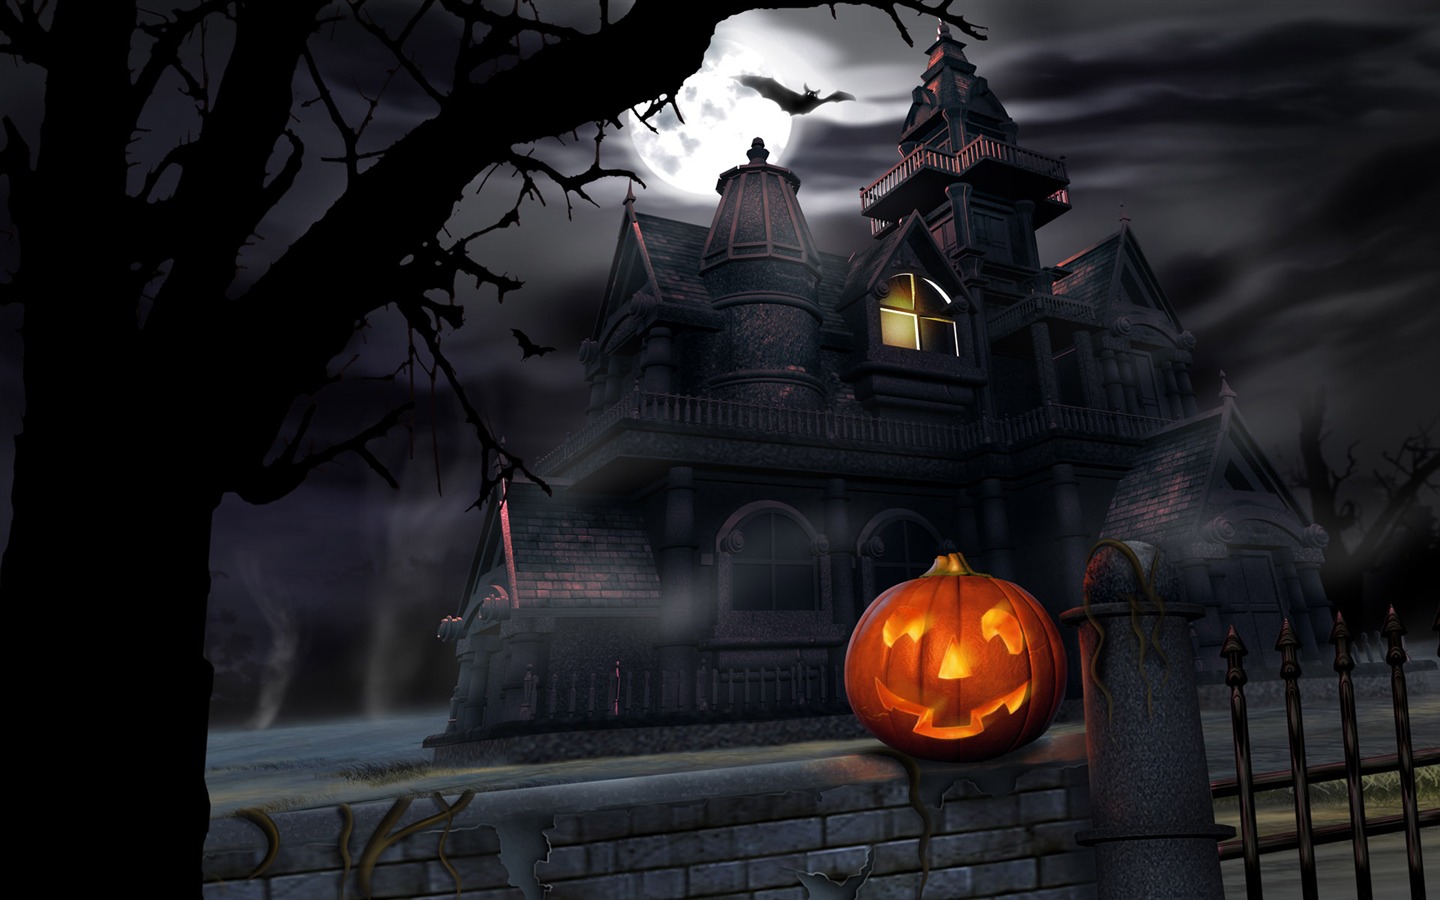 Fondos de Halloween temáticos (4) #3 - 1440x900